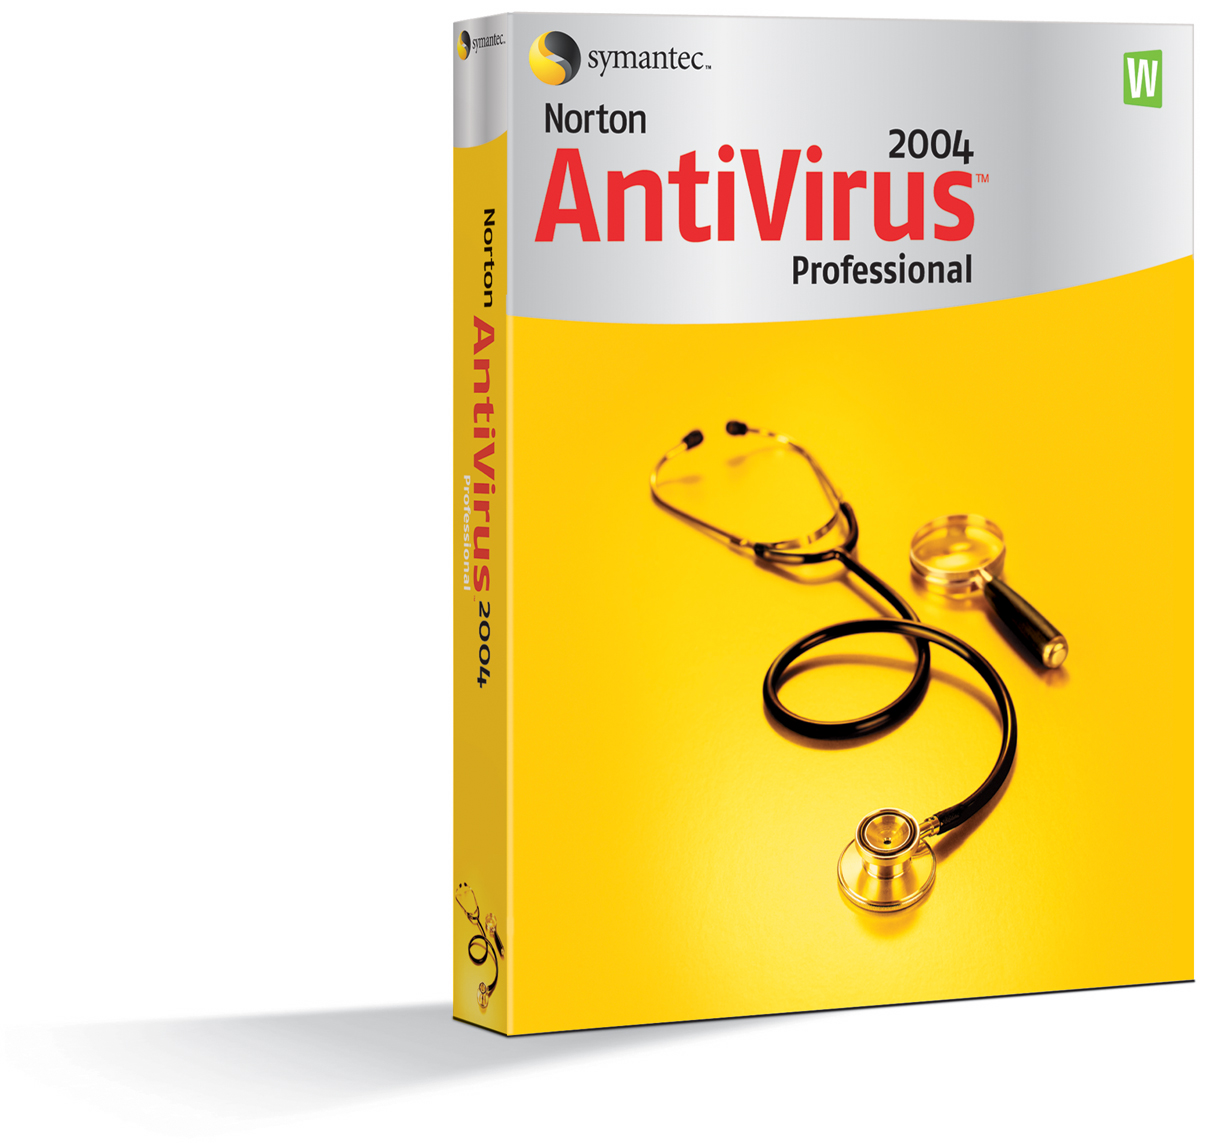 Comcast Free Antivirus Software